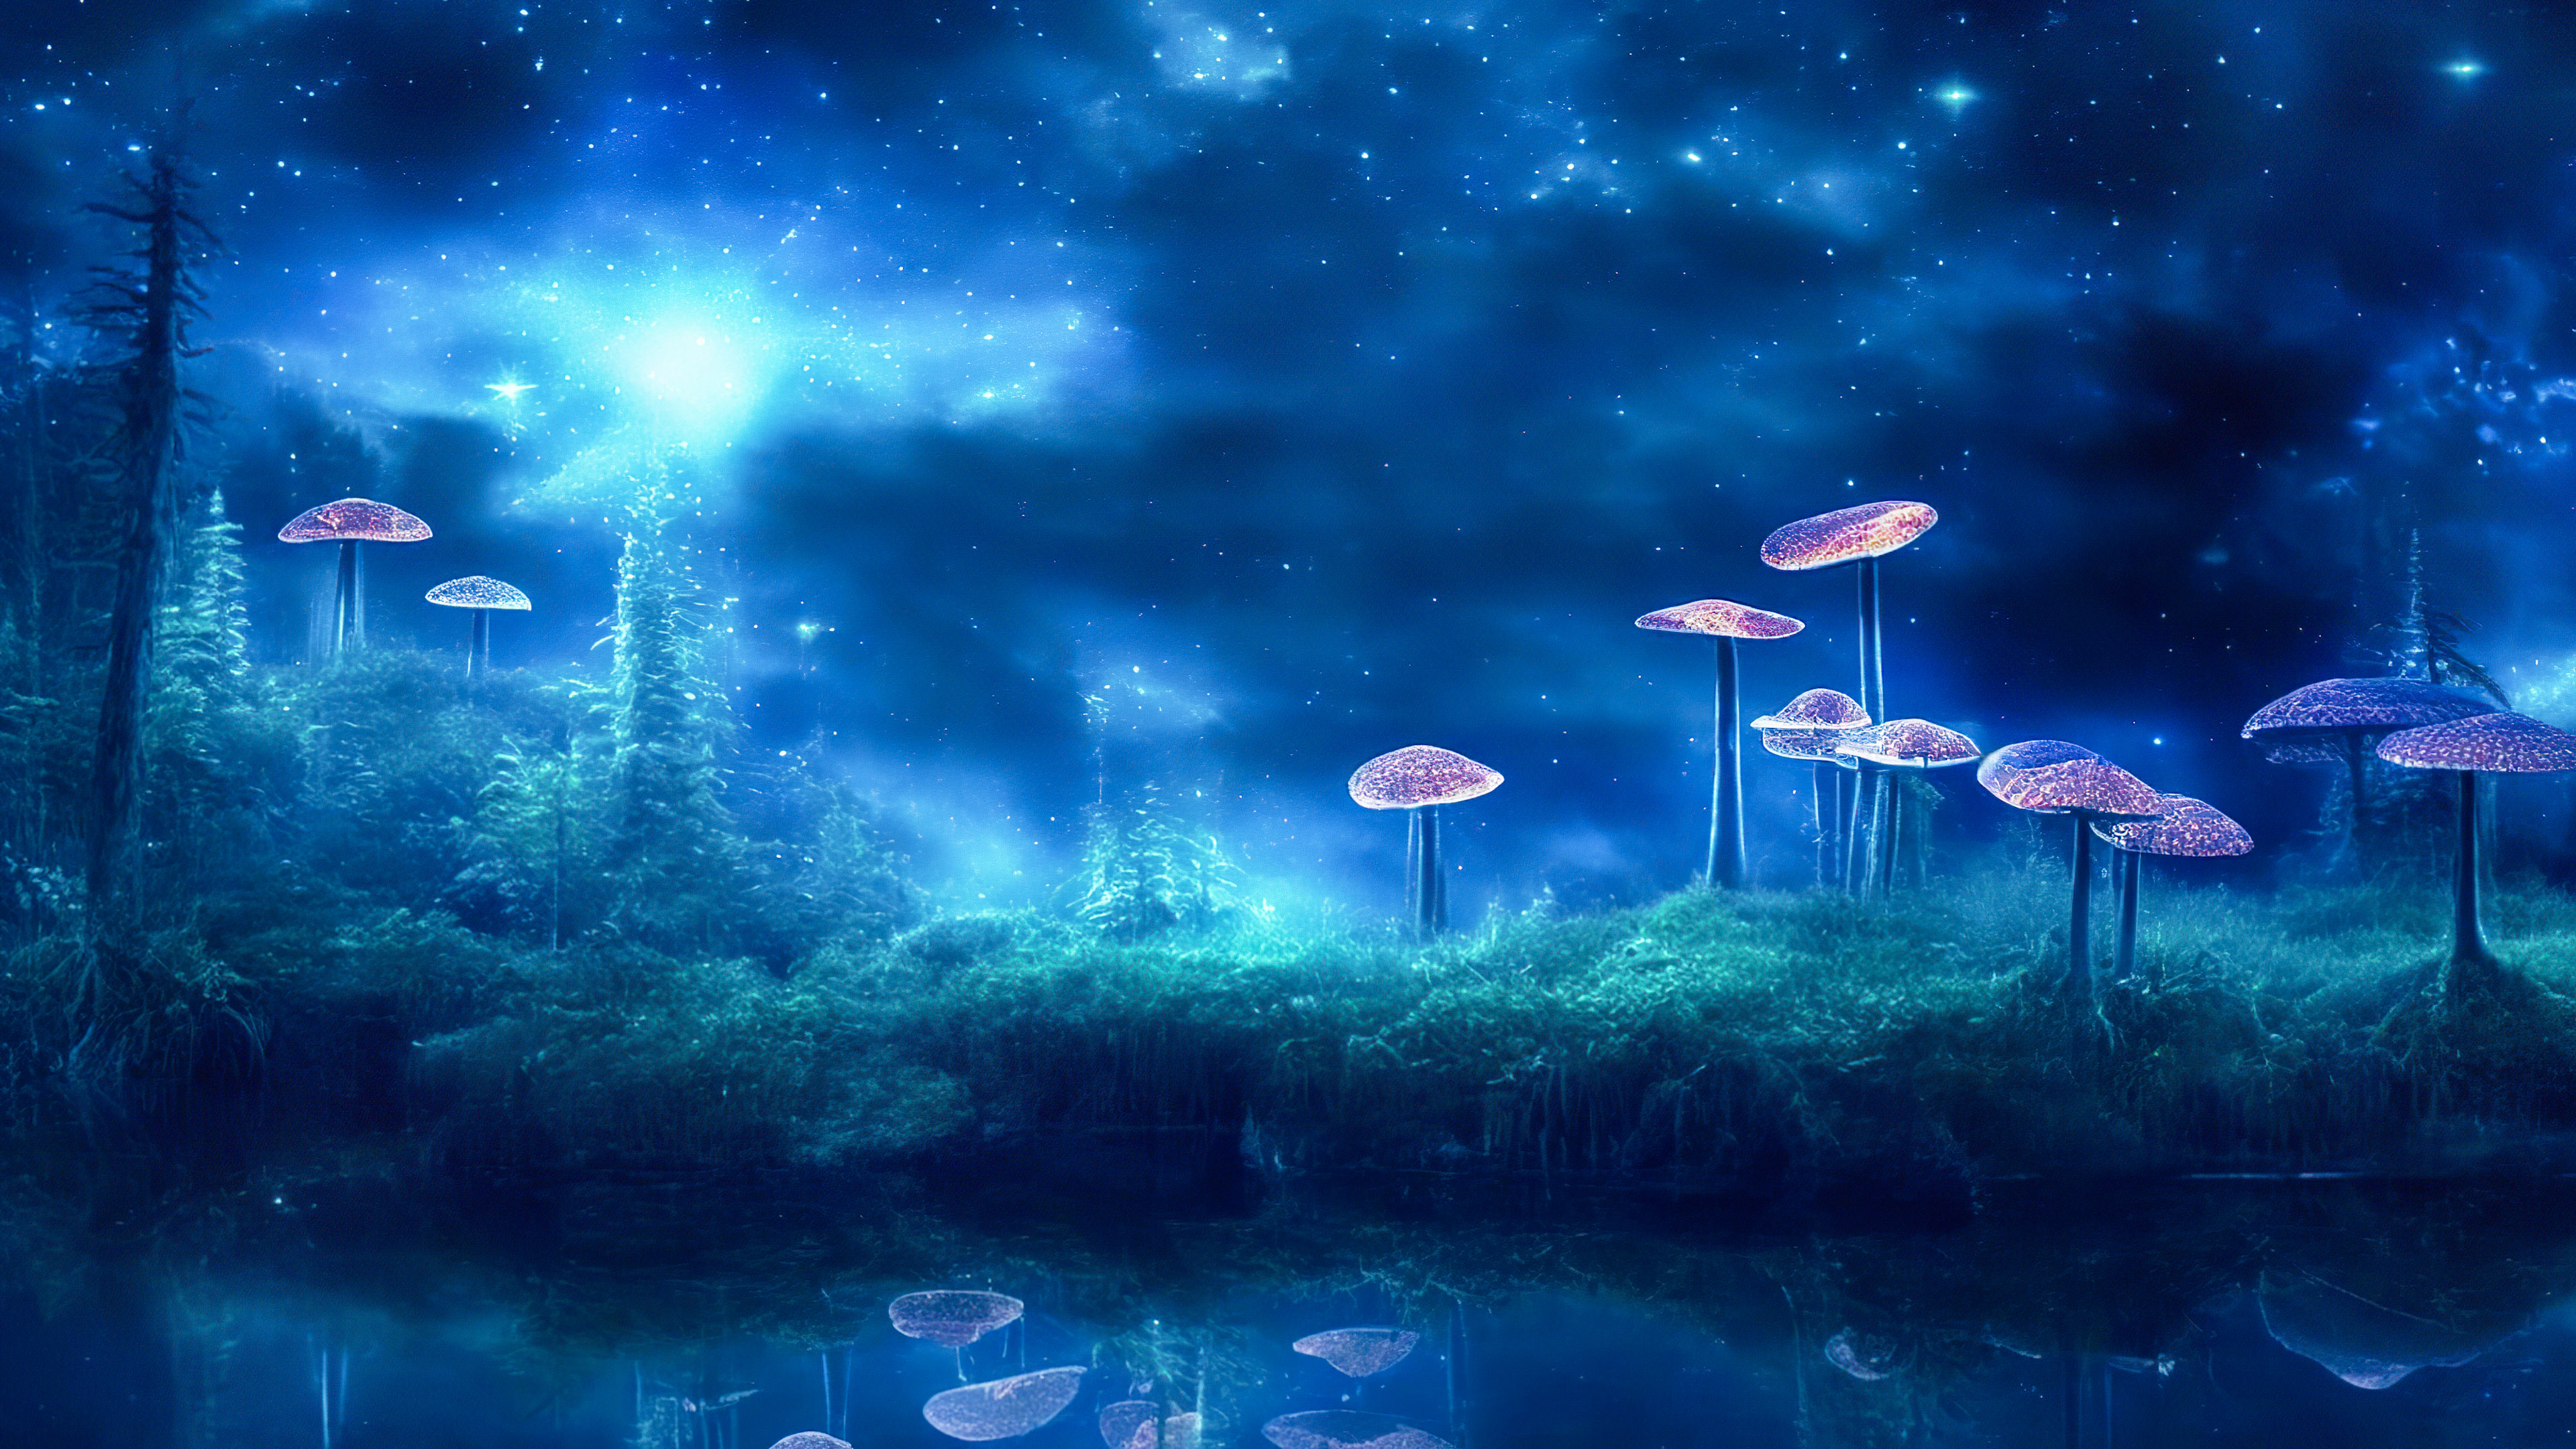 Perdez-vous dans l'enchantement de notre fond d'écran de nuit cool, présentant une clairière mystique avec des champignons bioluminescents, créant une scène surnaturelle.